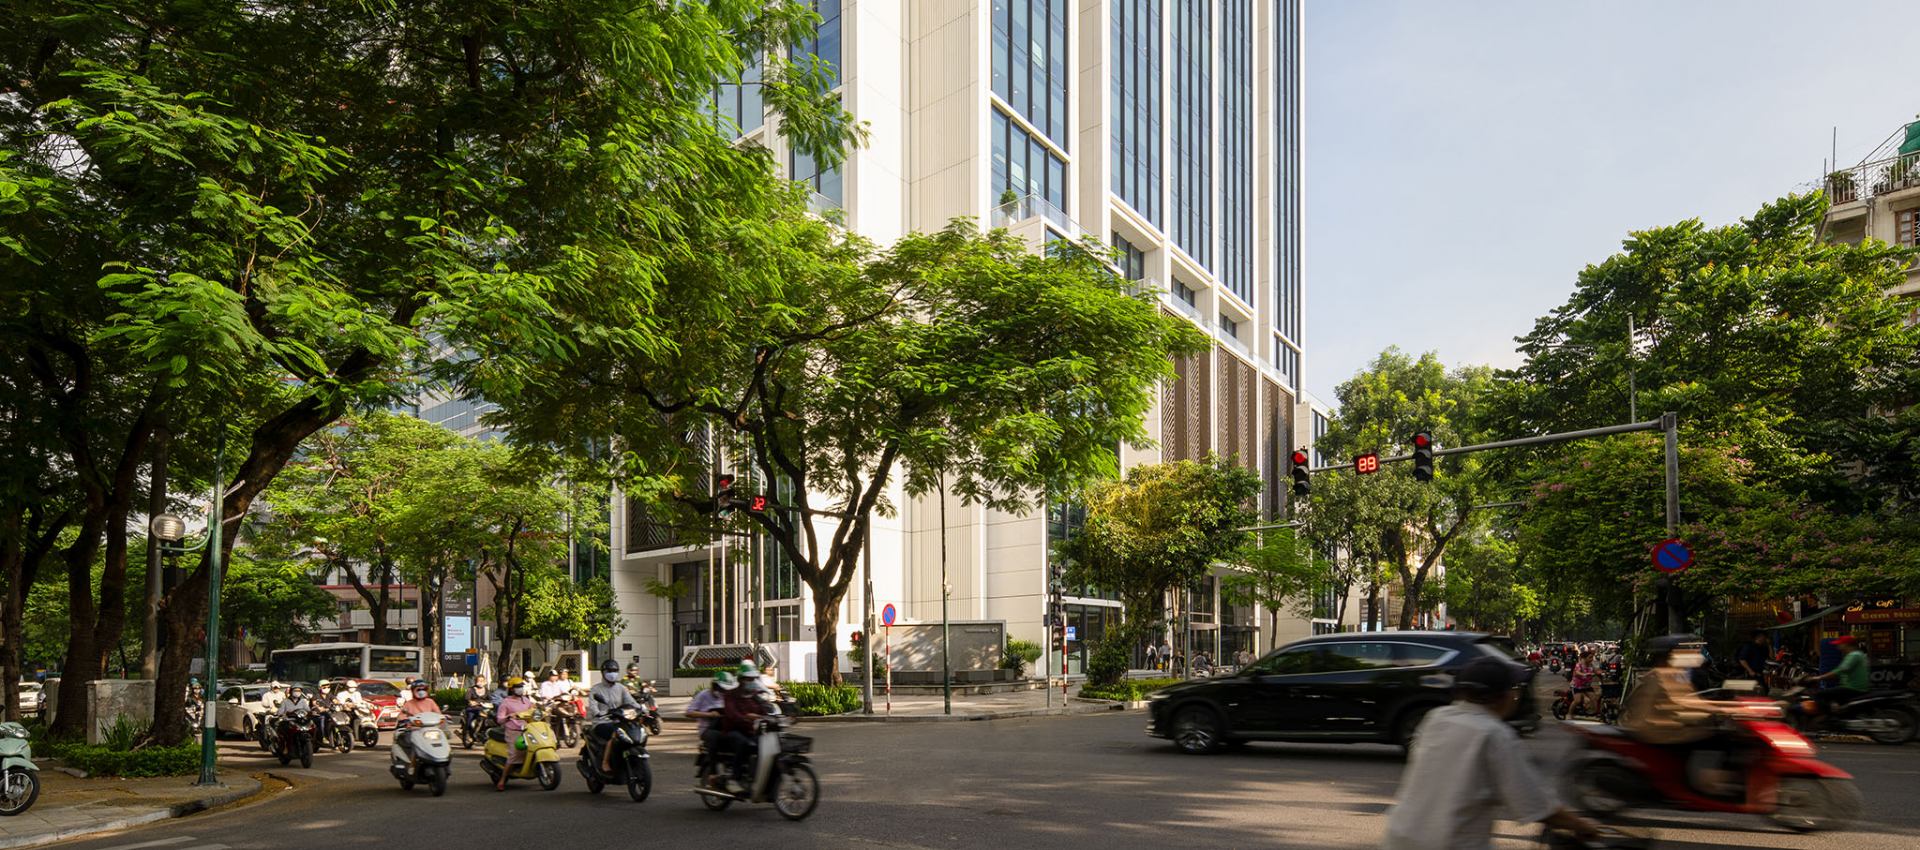 Nova sede do Techcombank em Hanói pela Foster + Partners |  Sobre Arquitetura e muito mais